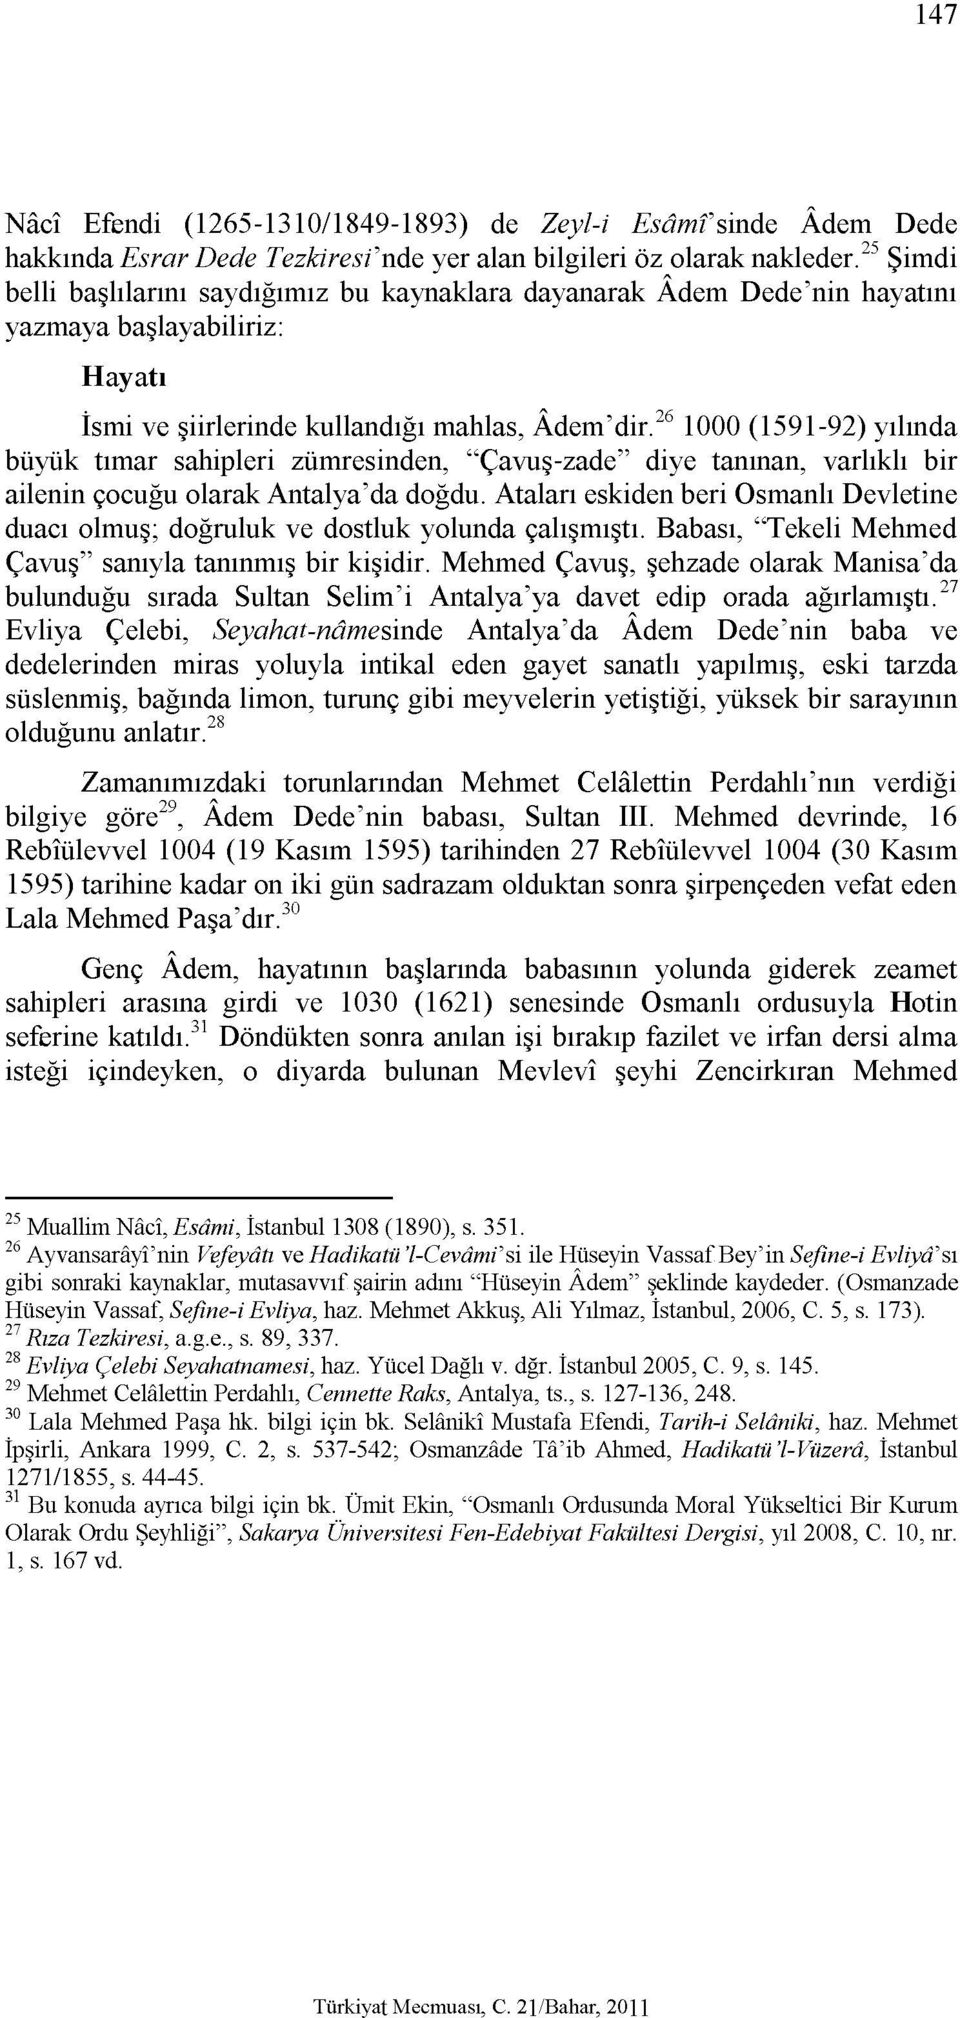 26 1000 (1591-92) yılında büyük tımar sahipleri zümresinden, "Çavuş-zade" diye tanınan, varlıklı bir ailenin çocuğu olarak Antalya'da doğdu.